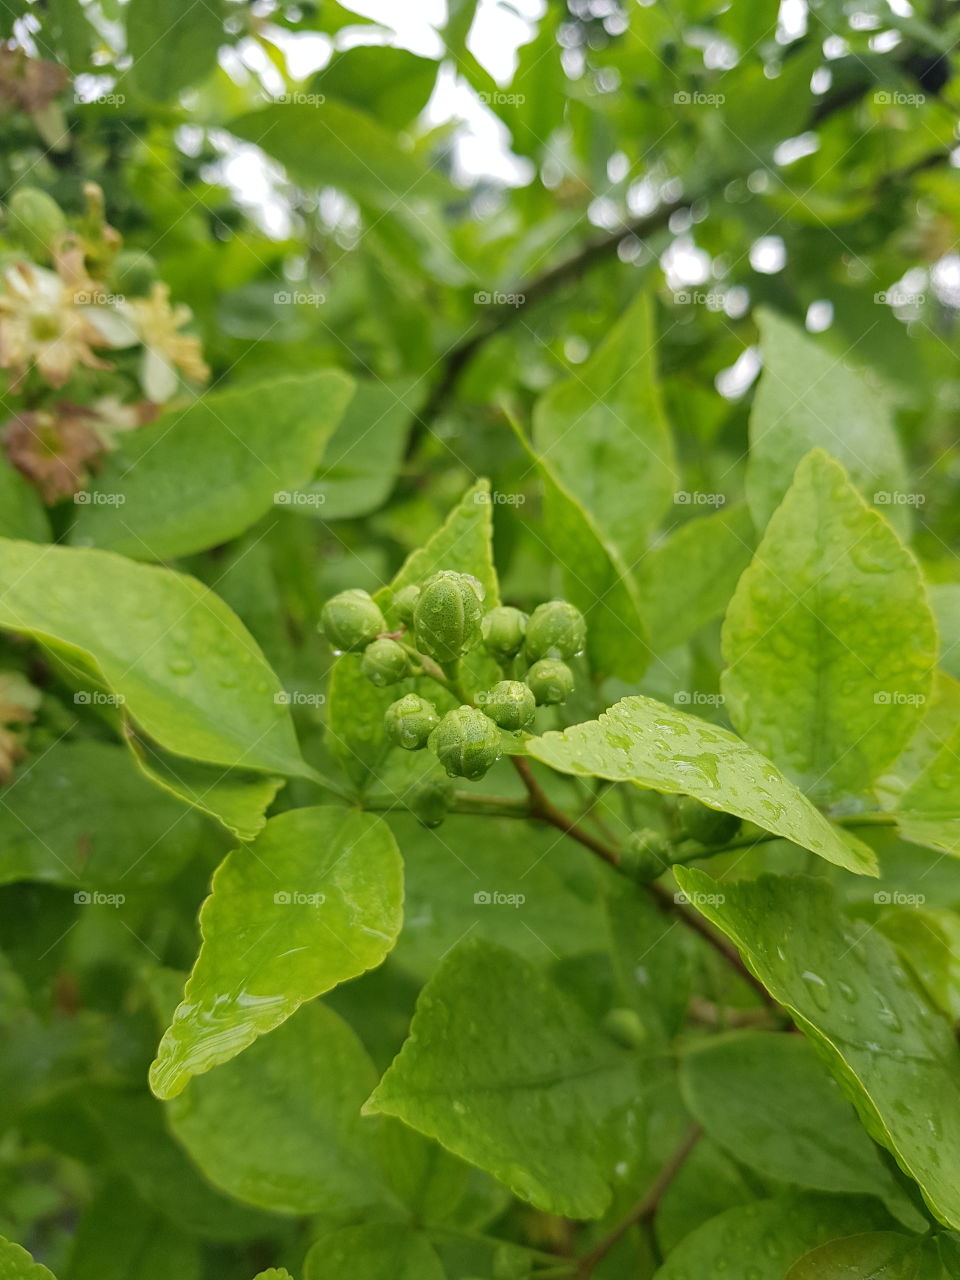 Green leaf around my garden